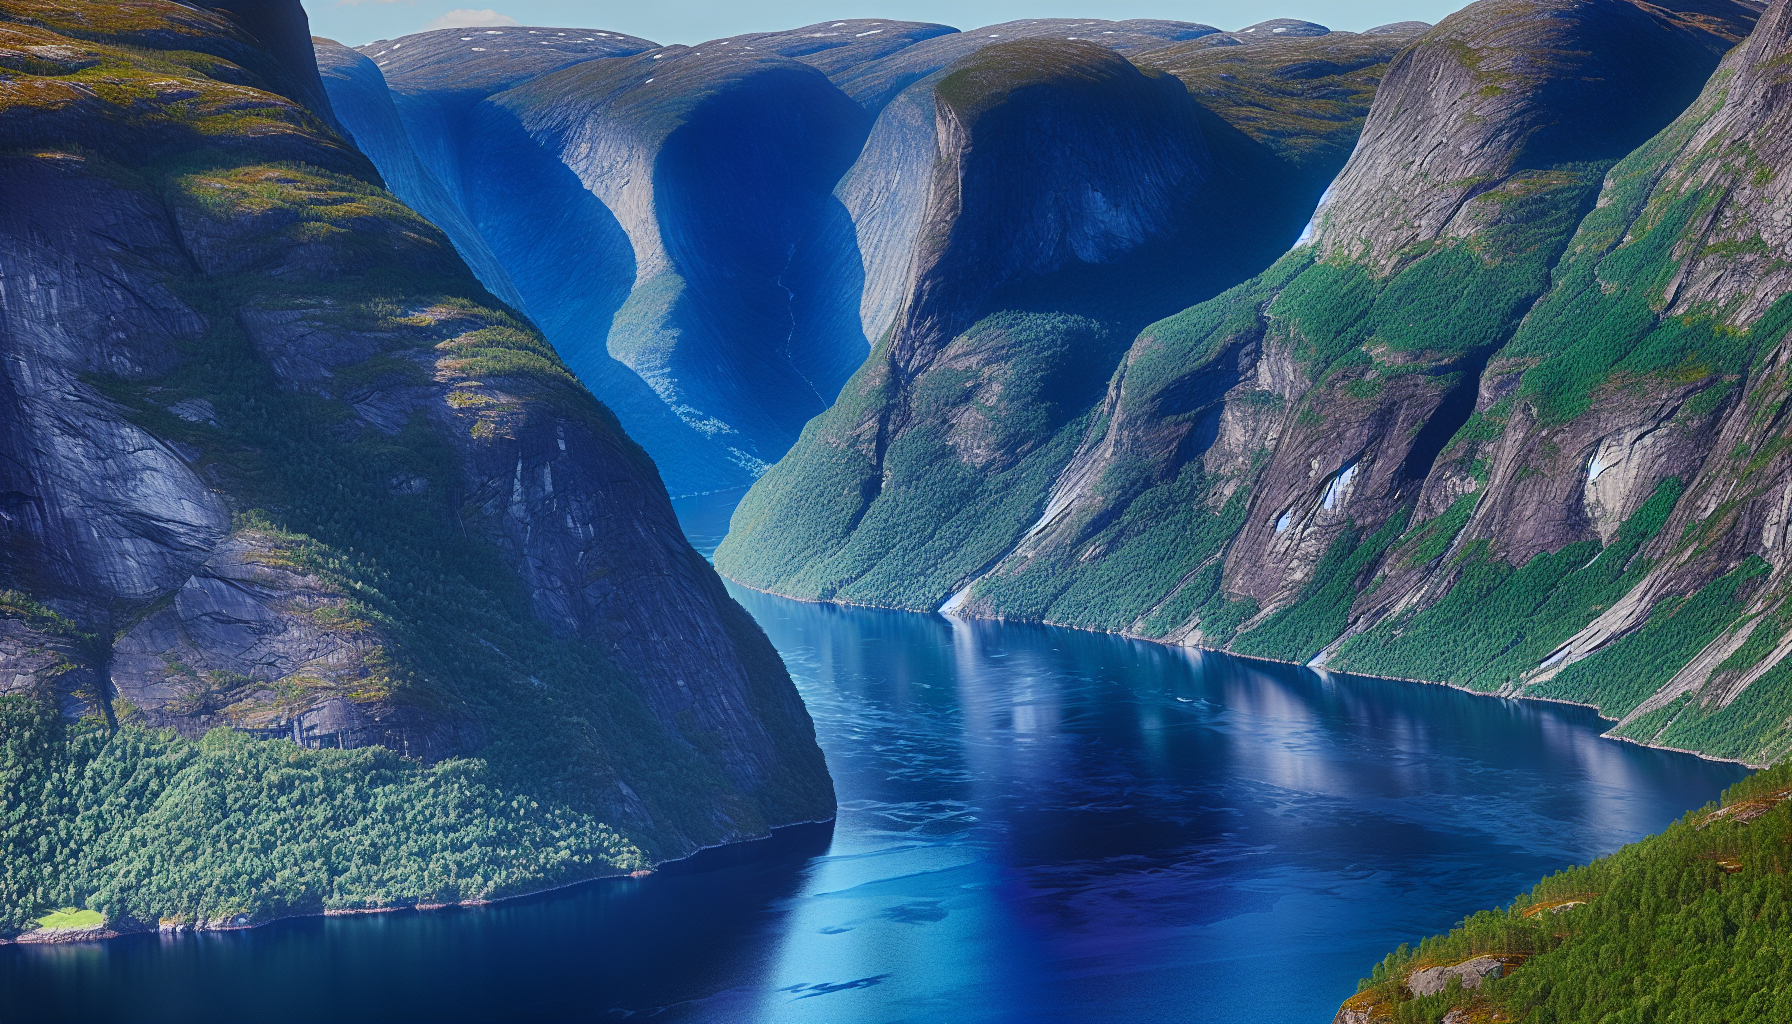 Verbluffend uitzicht over de prachtige fjorden van Noorwegen